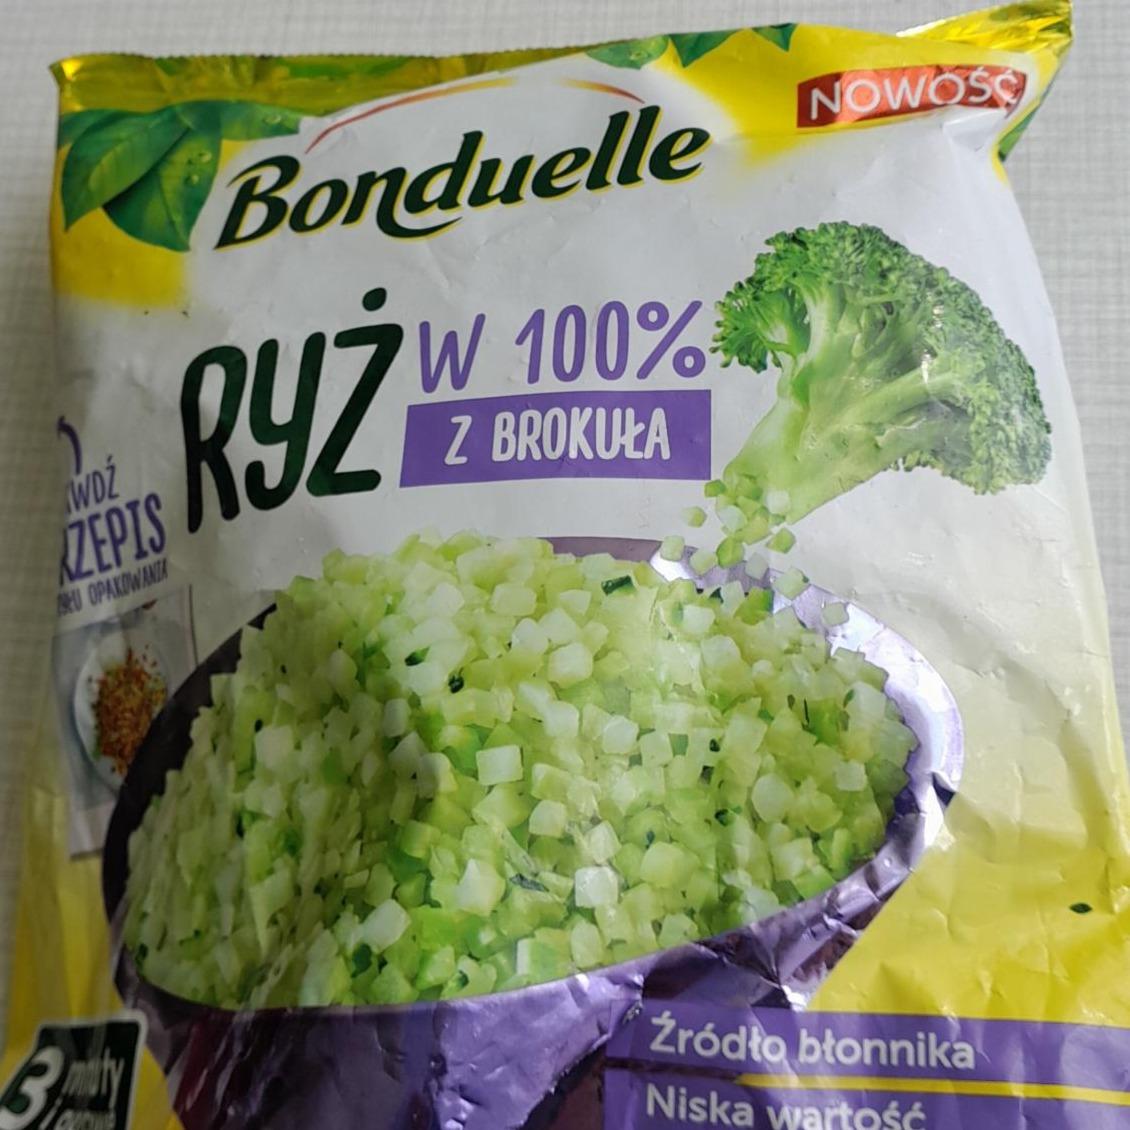 Fotografie - Ryż w 100% z brokuła Bonduelle